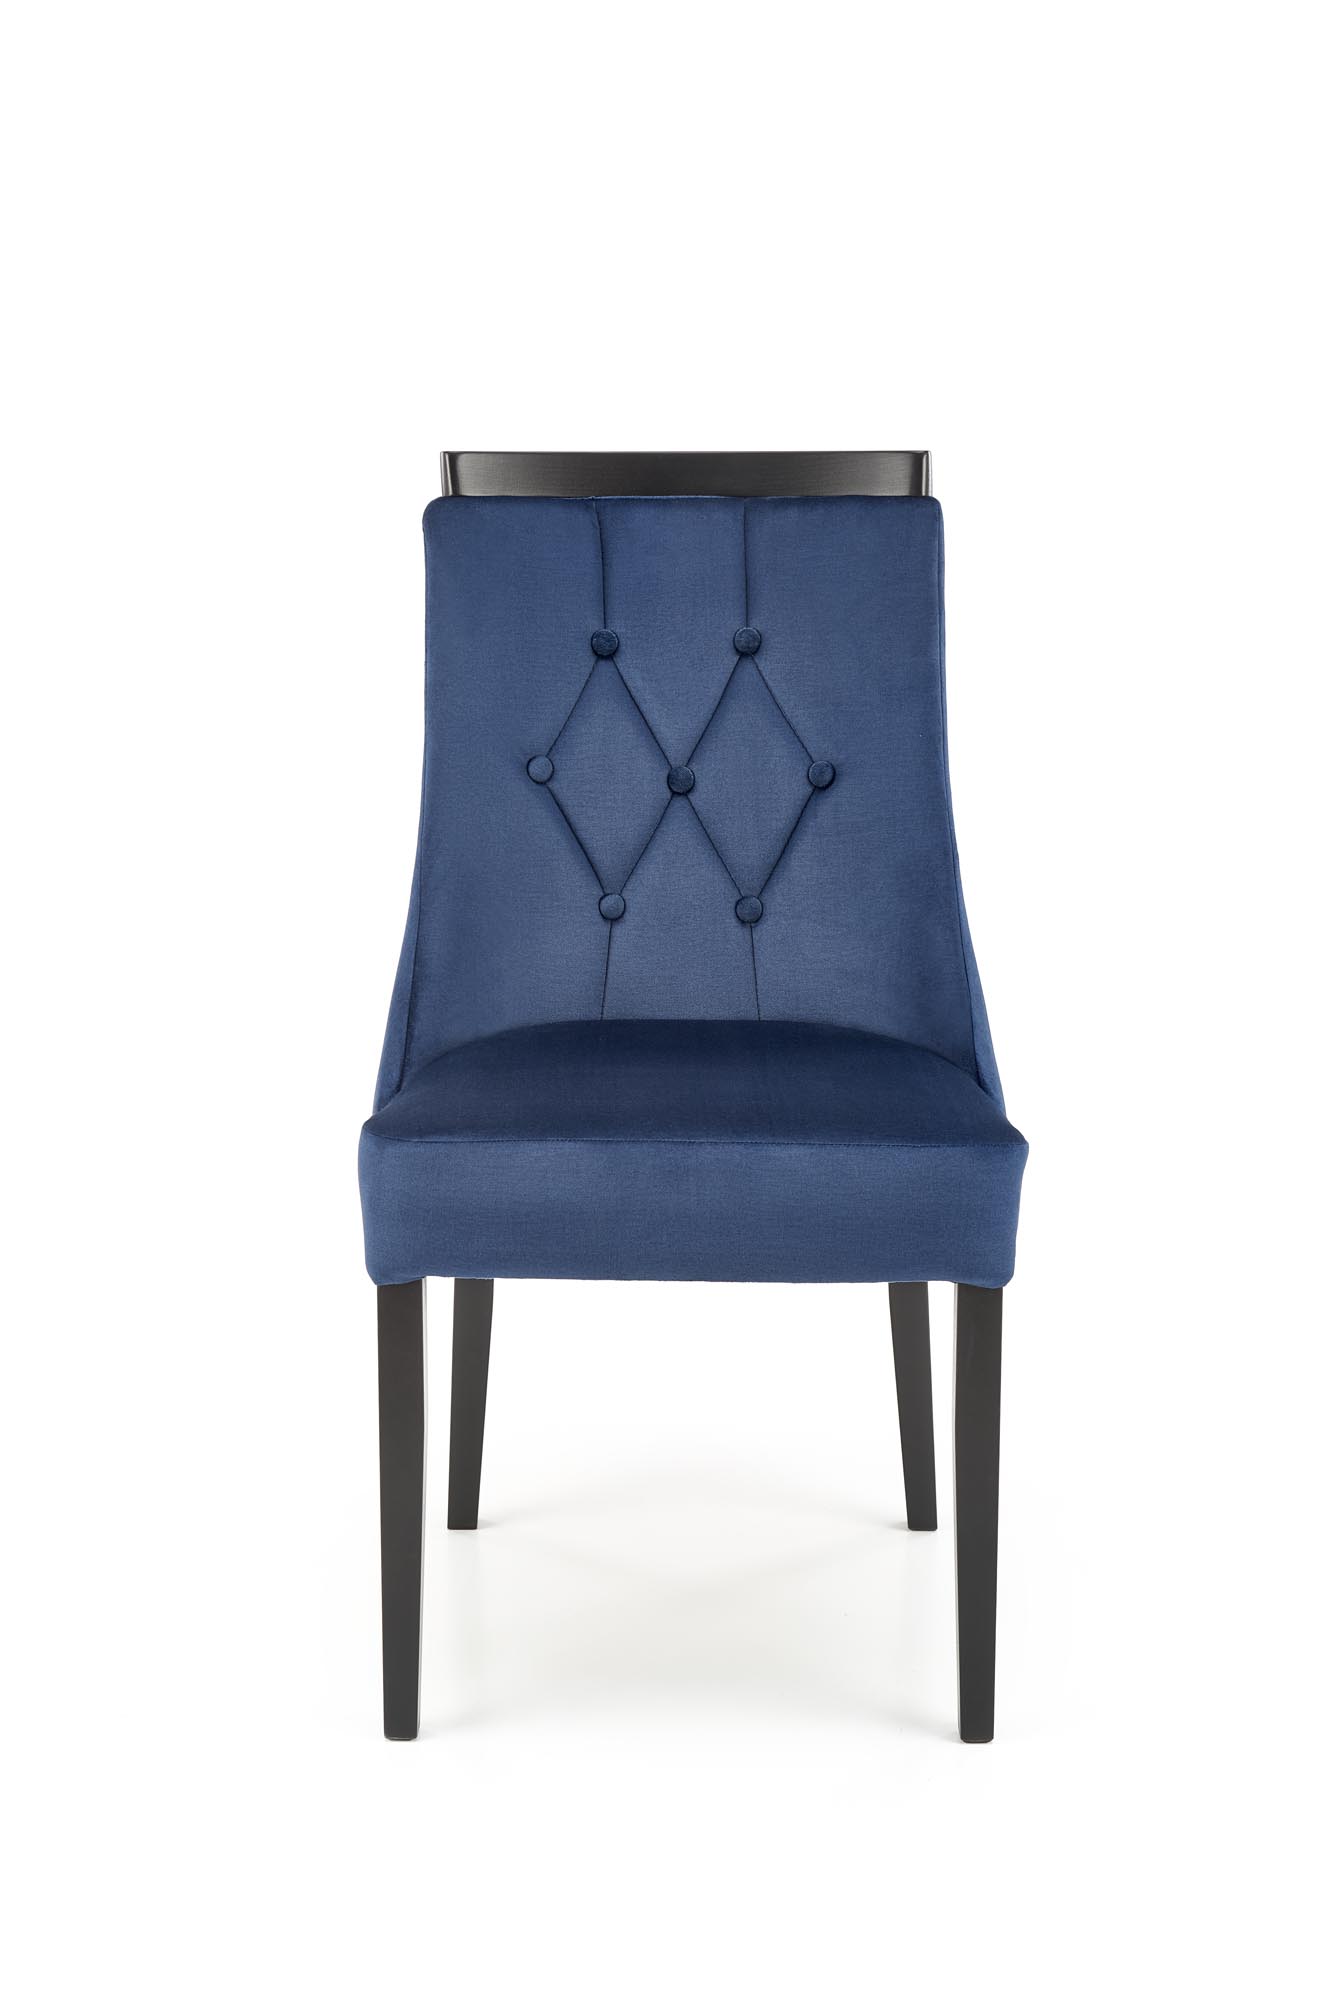 Krzesło tapicerowane Royal - czarny / granat krzesło tapicerowane royal - czarny / granat